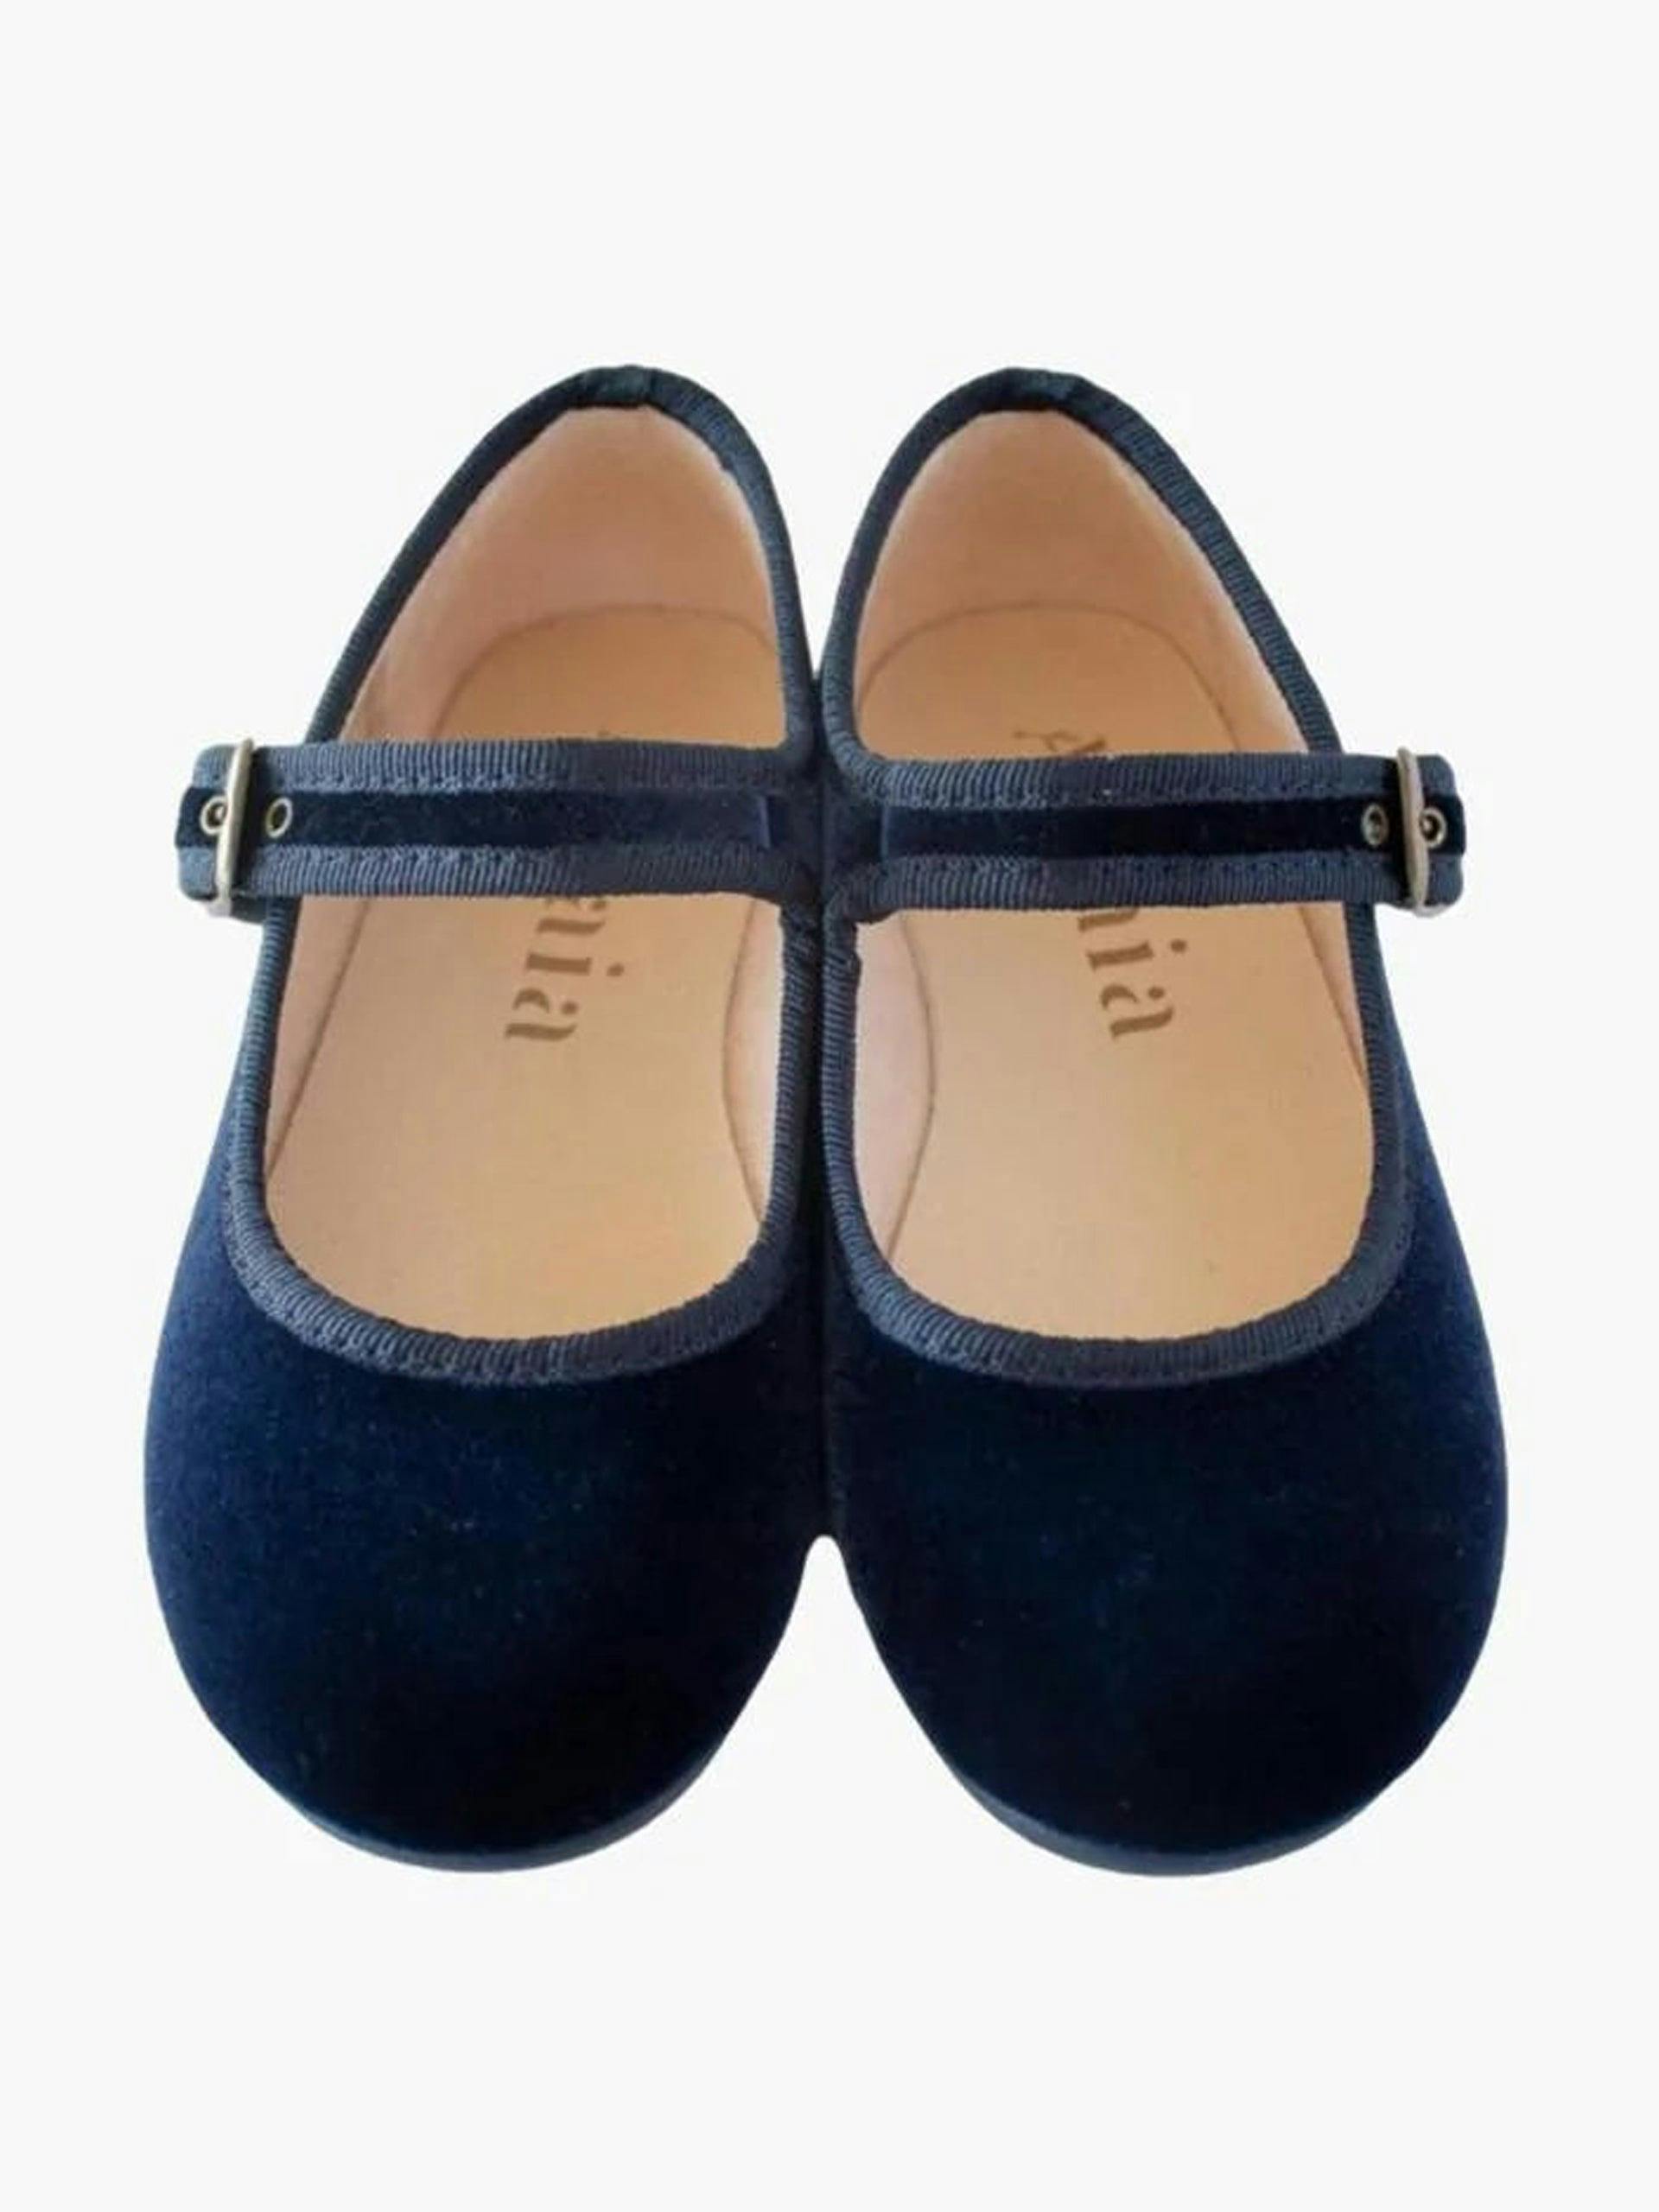 Navy blue velvet shoes for girls